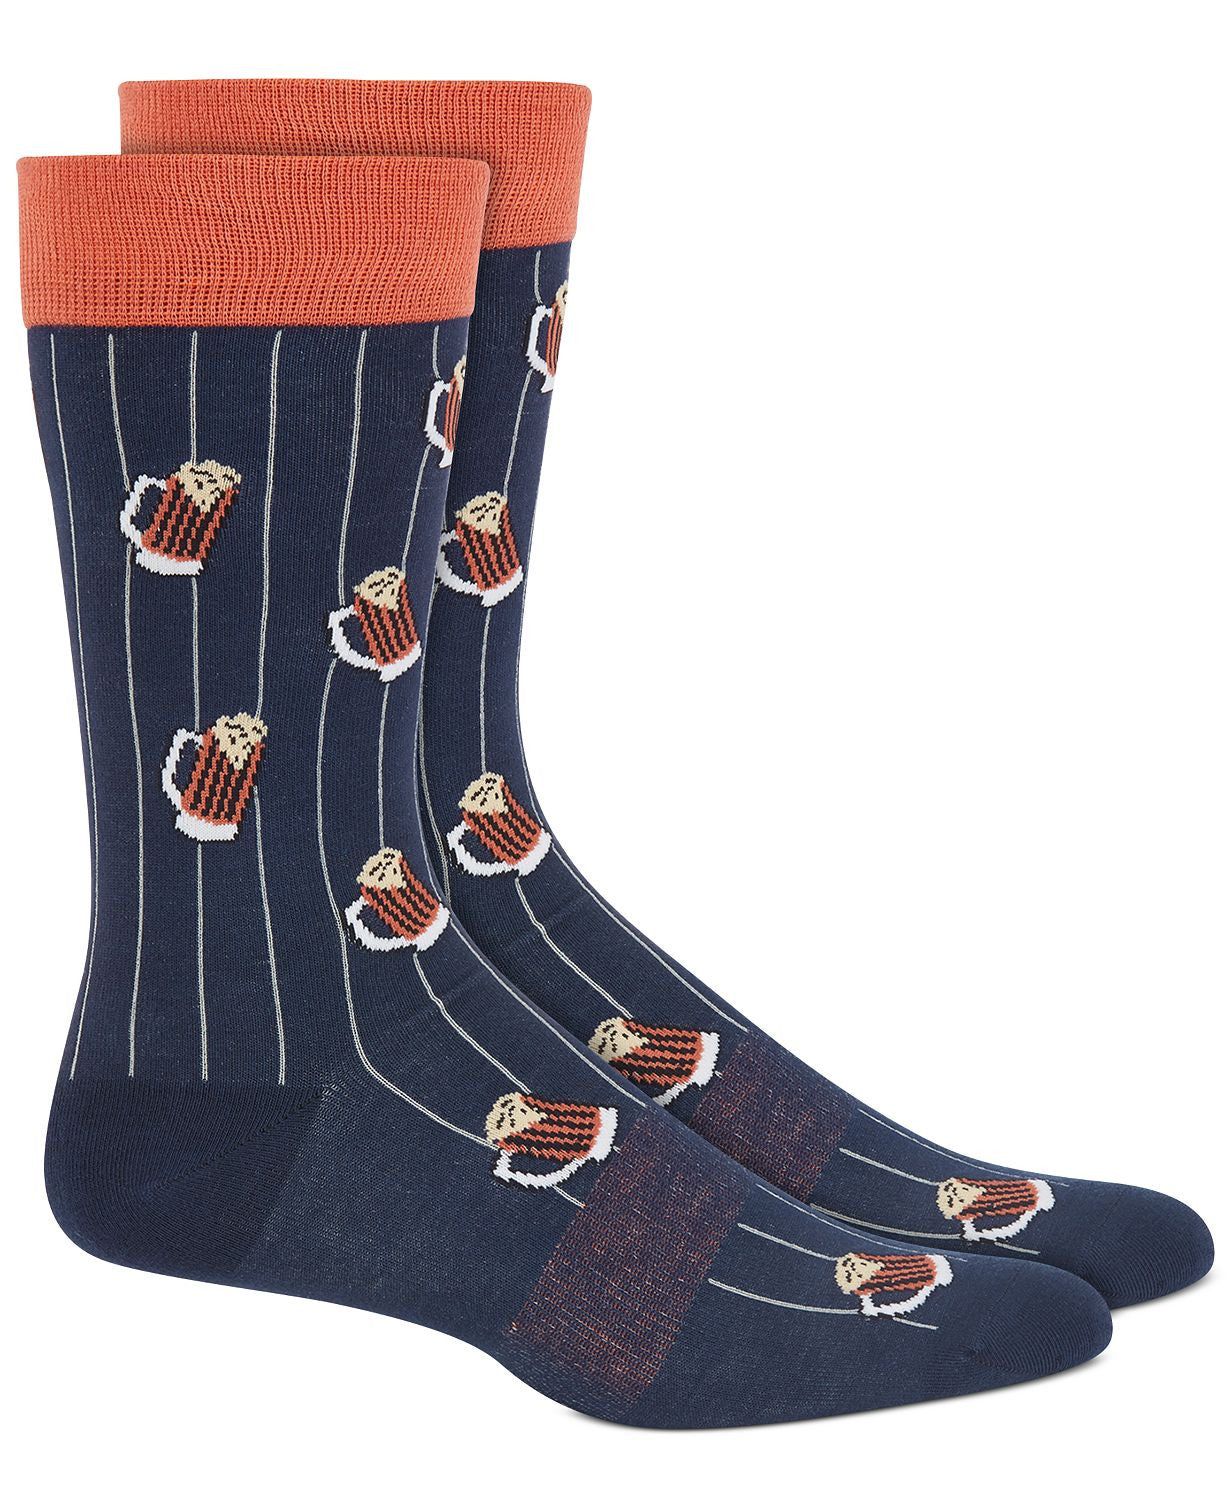 BAR III Printed Pinstripe Socks Navy Orange